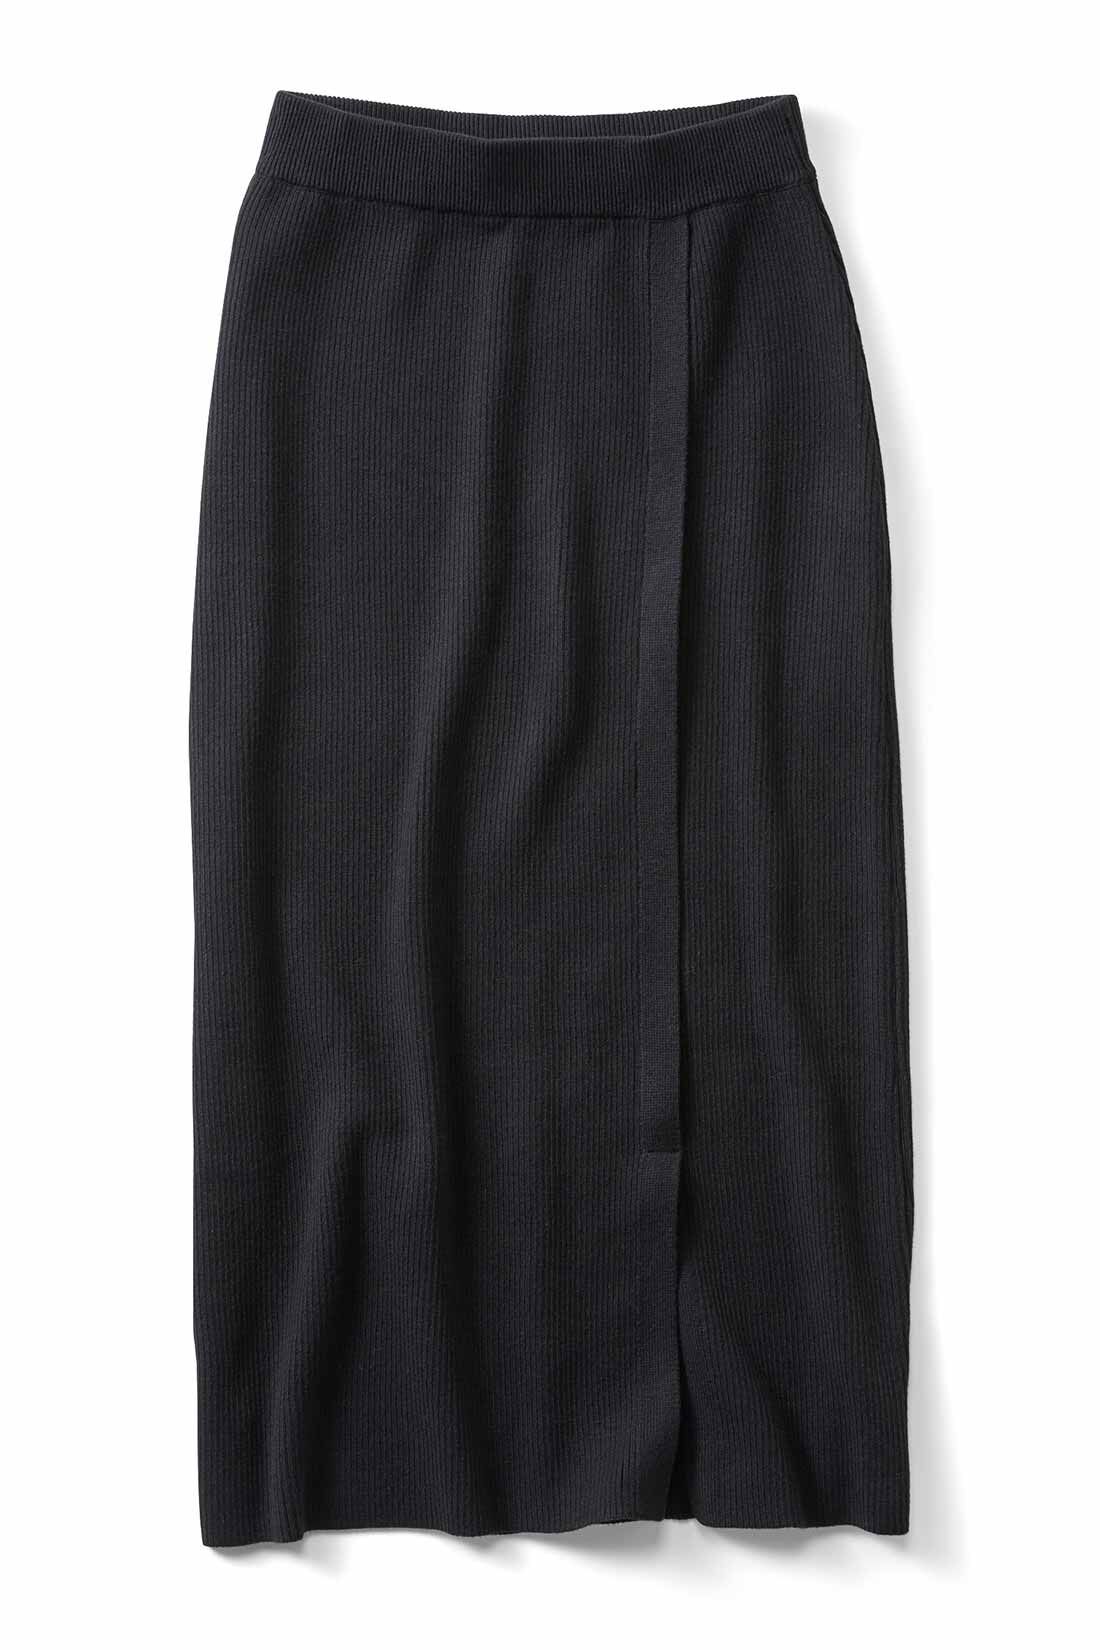 IEDIT[イディット]　Iラインシルエットのスリットデザインリブニットスカート〈グレイッシュネイビー〉|〈ブラック〉